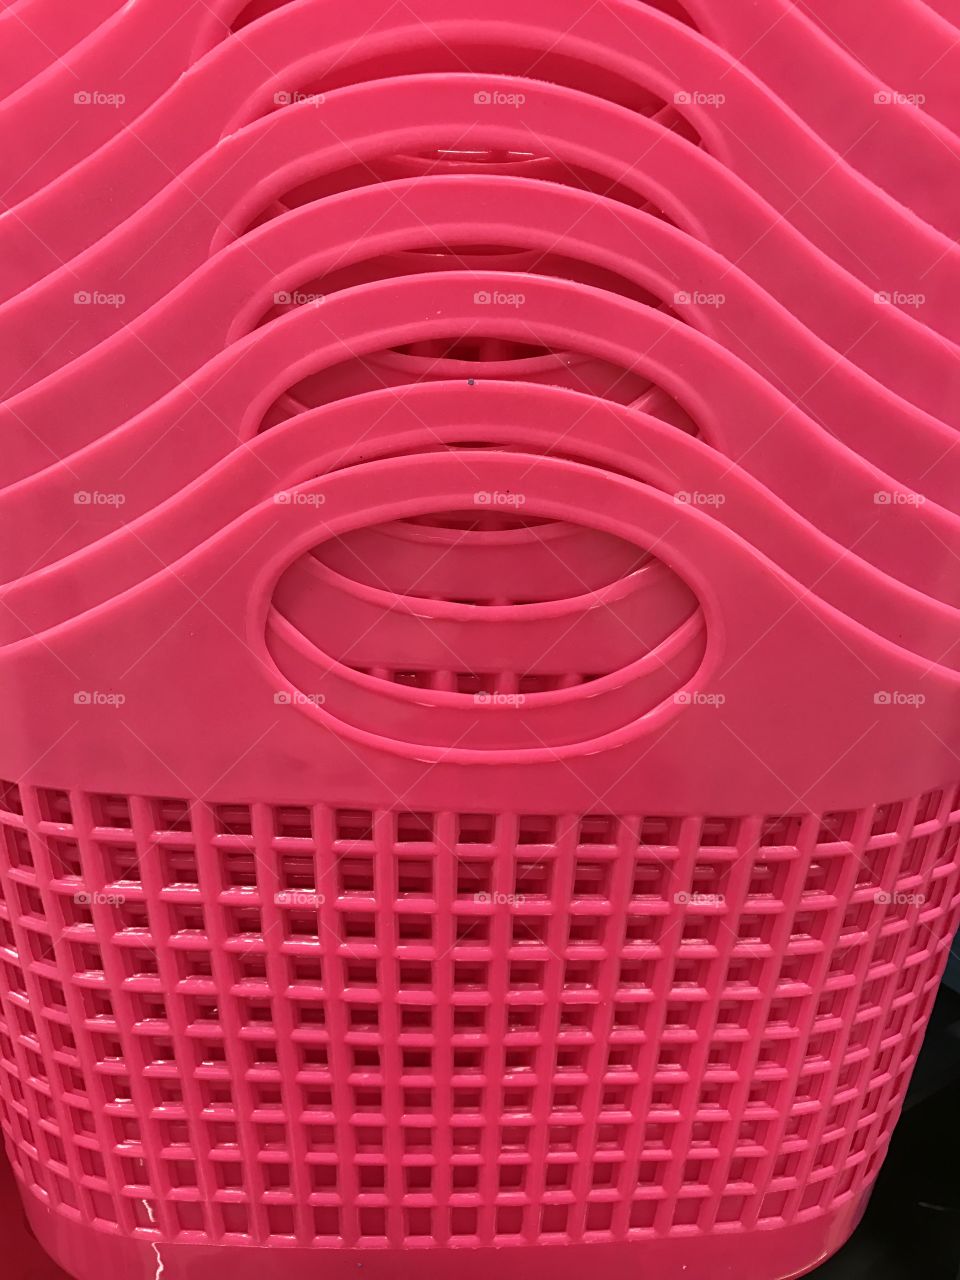 Pink Baskets